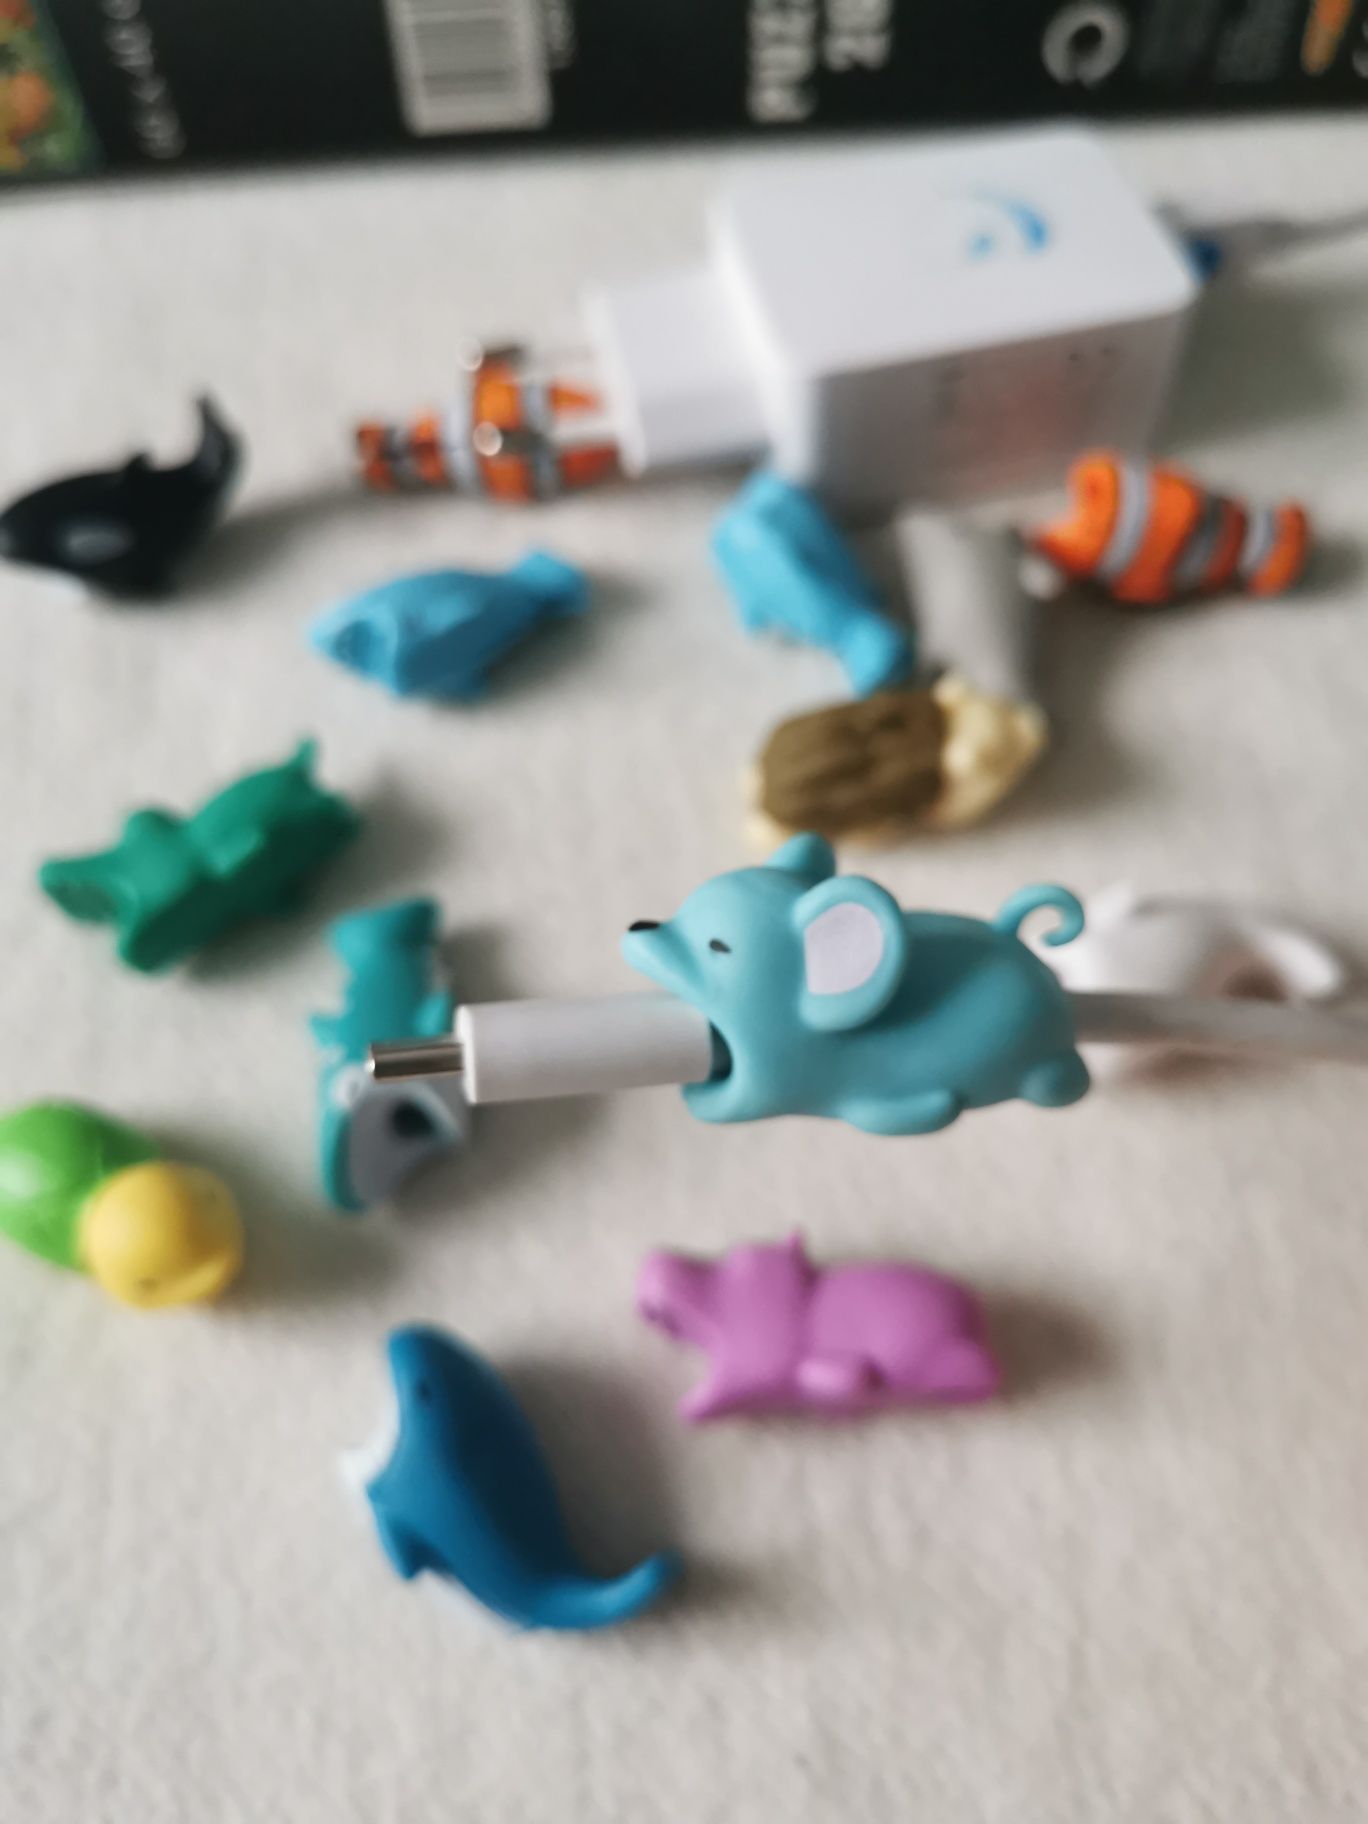 Zestaw Toy story Ben10 puzzle piórnik prezent dla chłopca